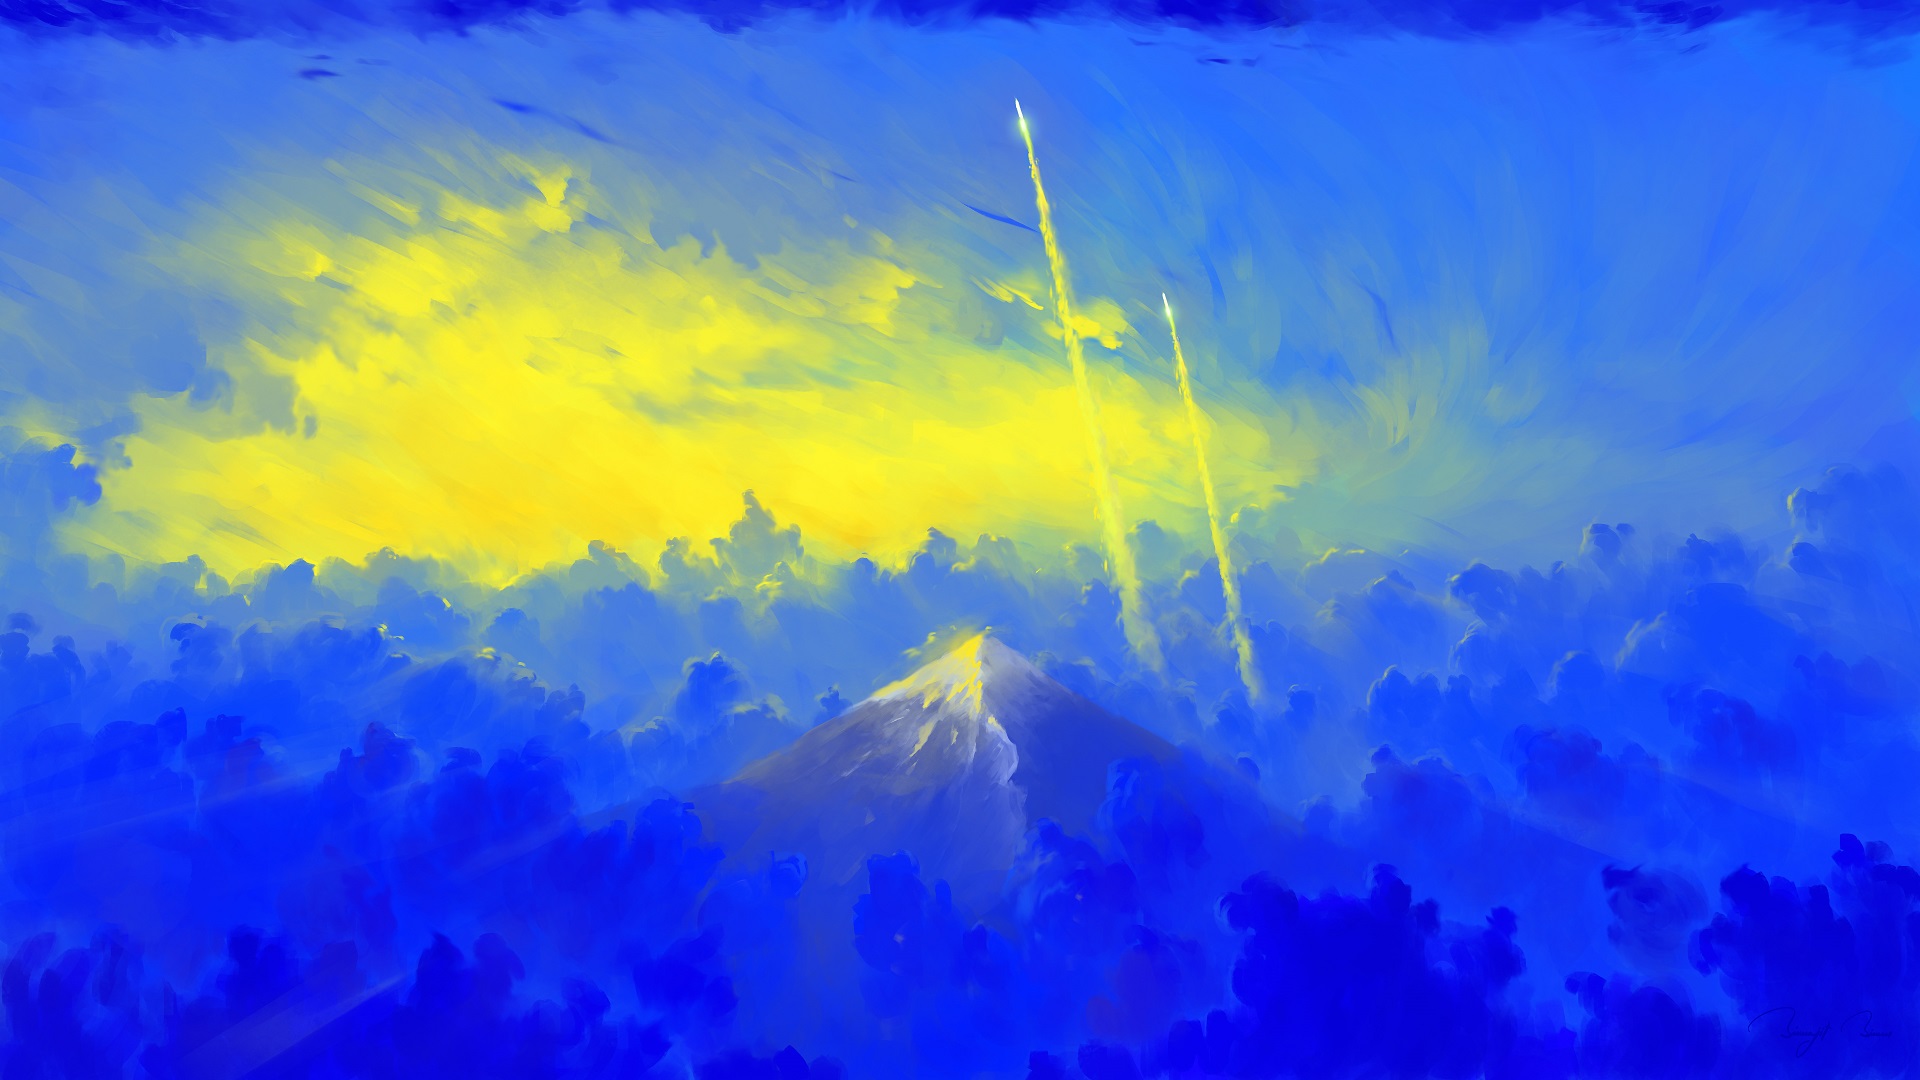 BisBiswas Mountains Clouds Sunrise Rocket Digital Art 1920x1080